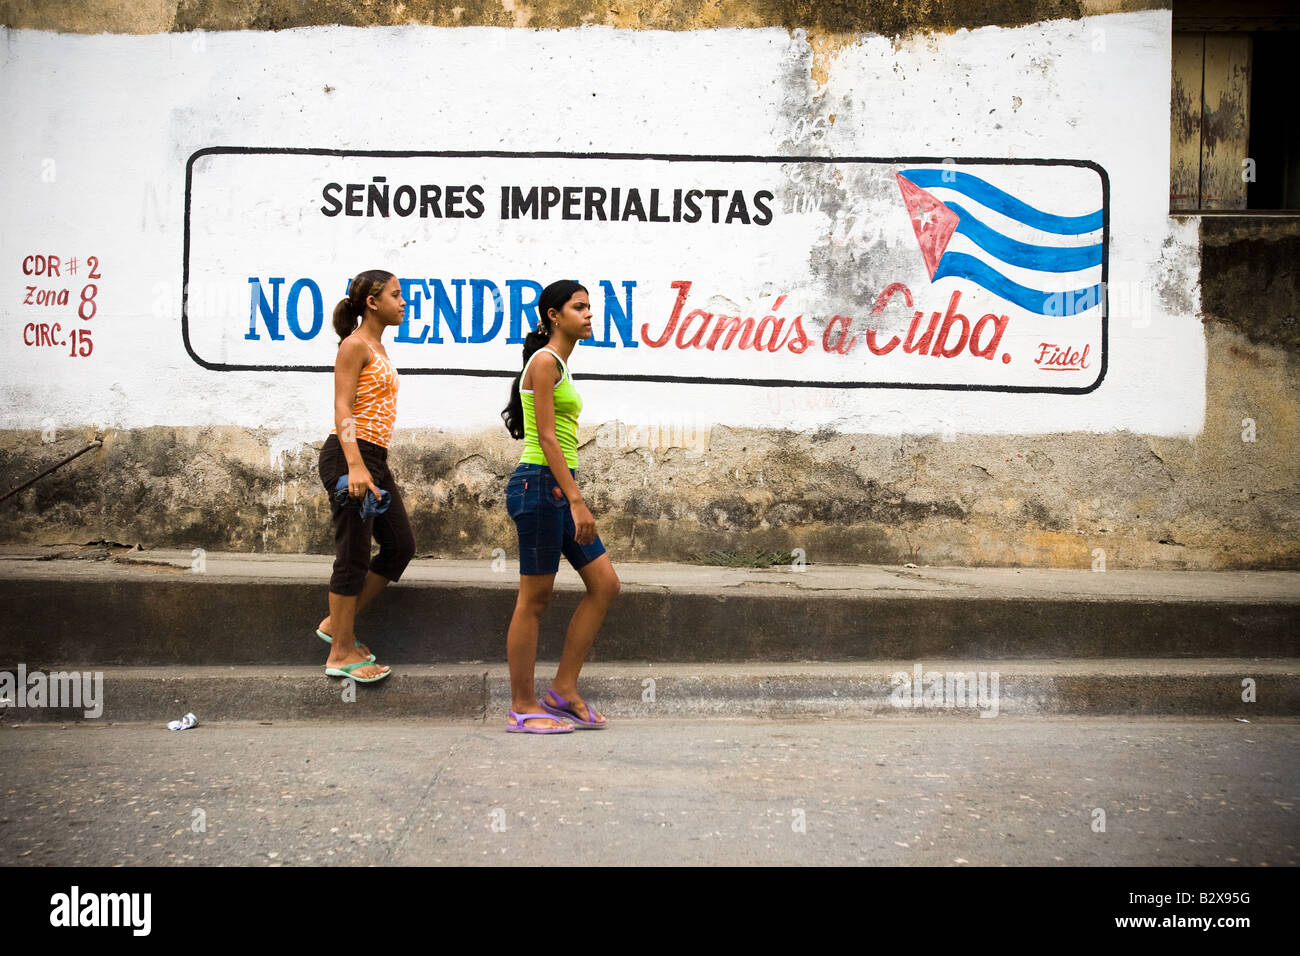 Zwei Mädchen im Teenageralter Fuß durch eine Wandmalerei in Spanisch Imperialisten geehrte Damen und Herren sagen, erhalten Sie nie in Baracoa Kuba Kuba auf Donner Stockfoto